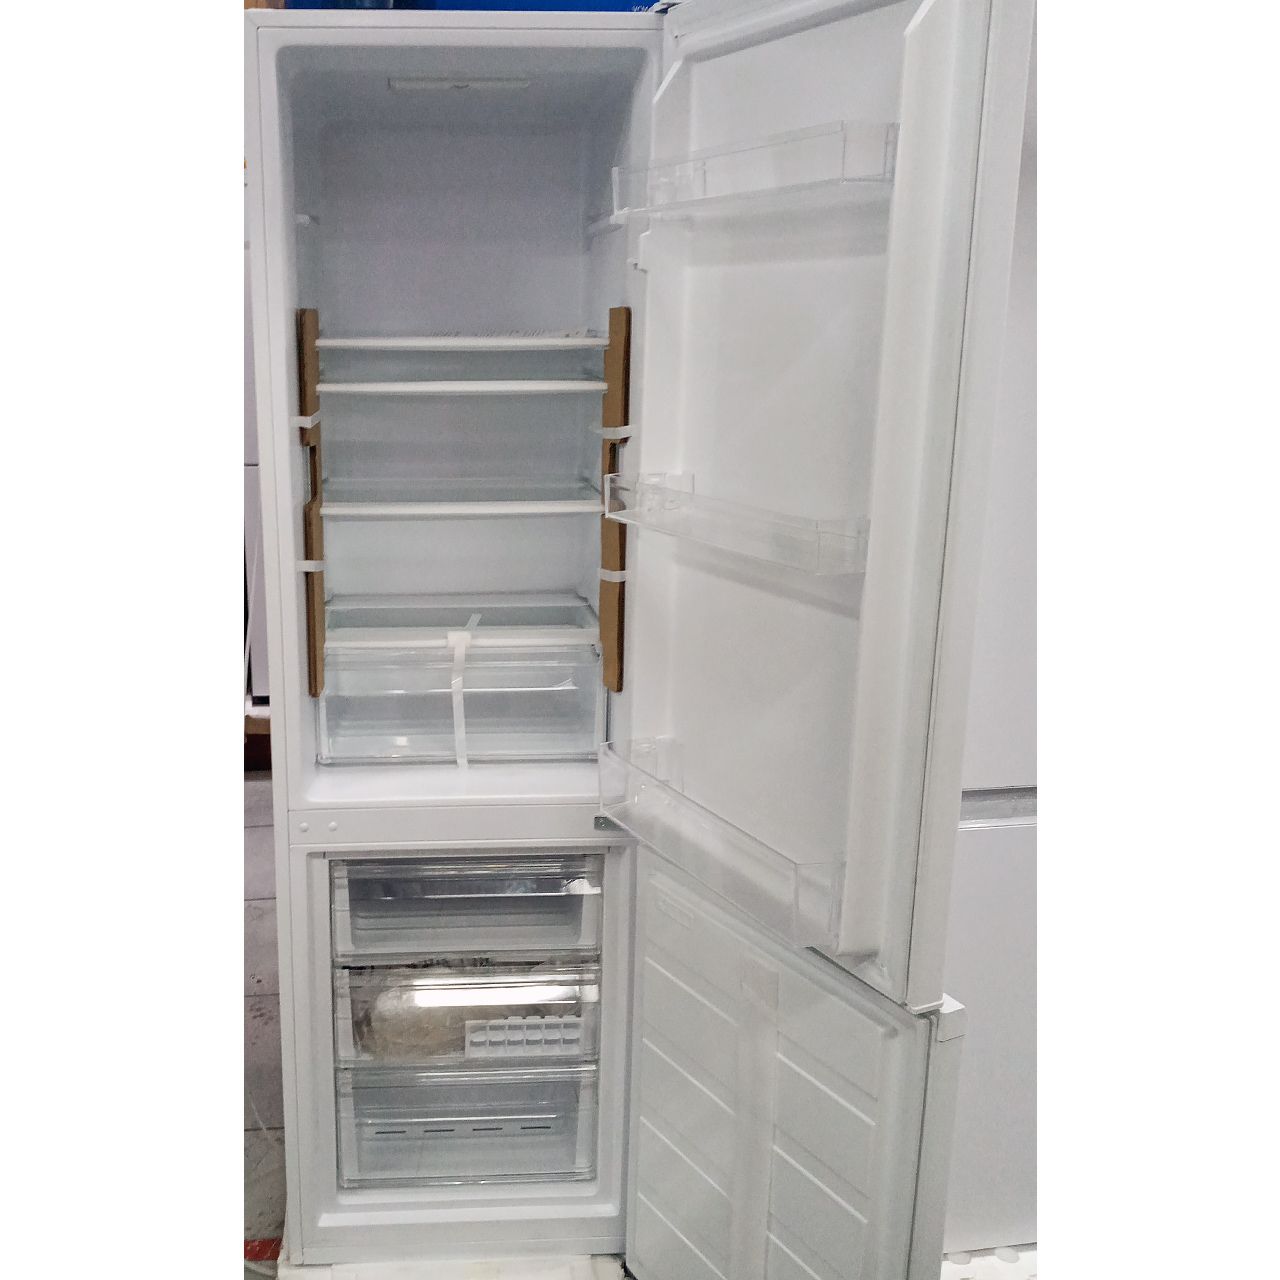 Холодильник двухкамерный ARG 265 литров